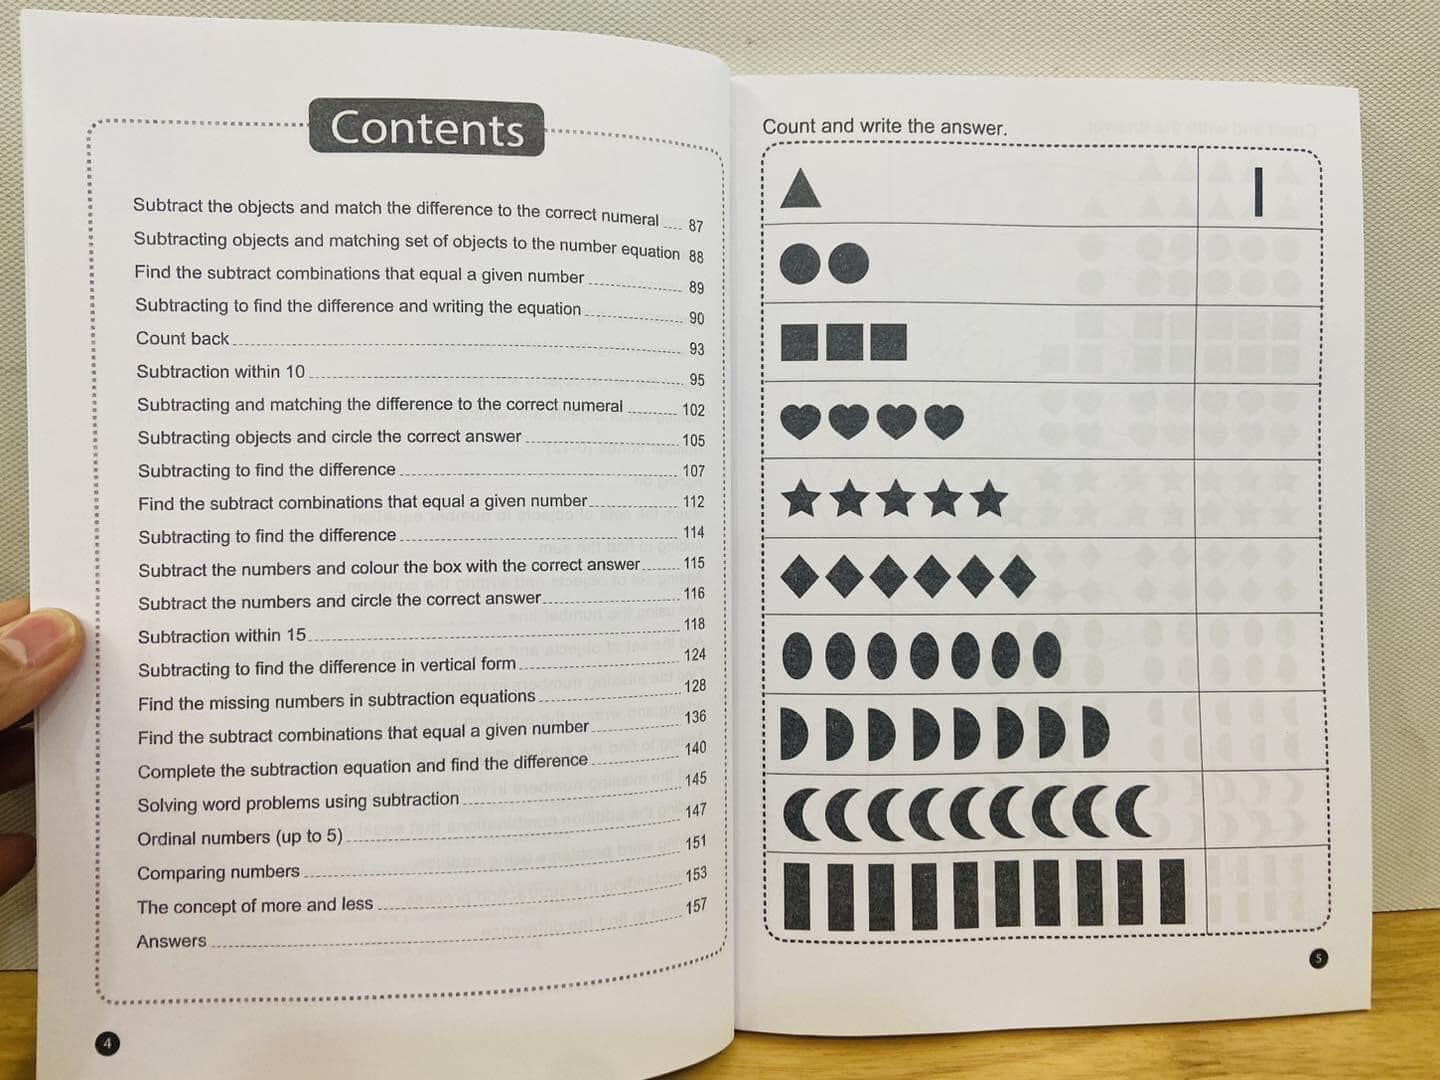 Sách - Combo Preschool Maths Workbook ( Bộ 3 cuốn)